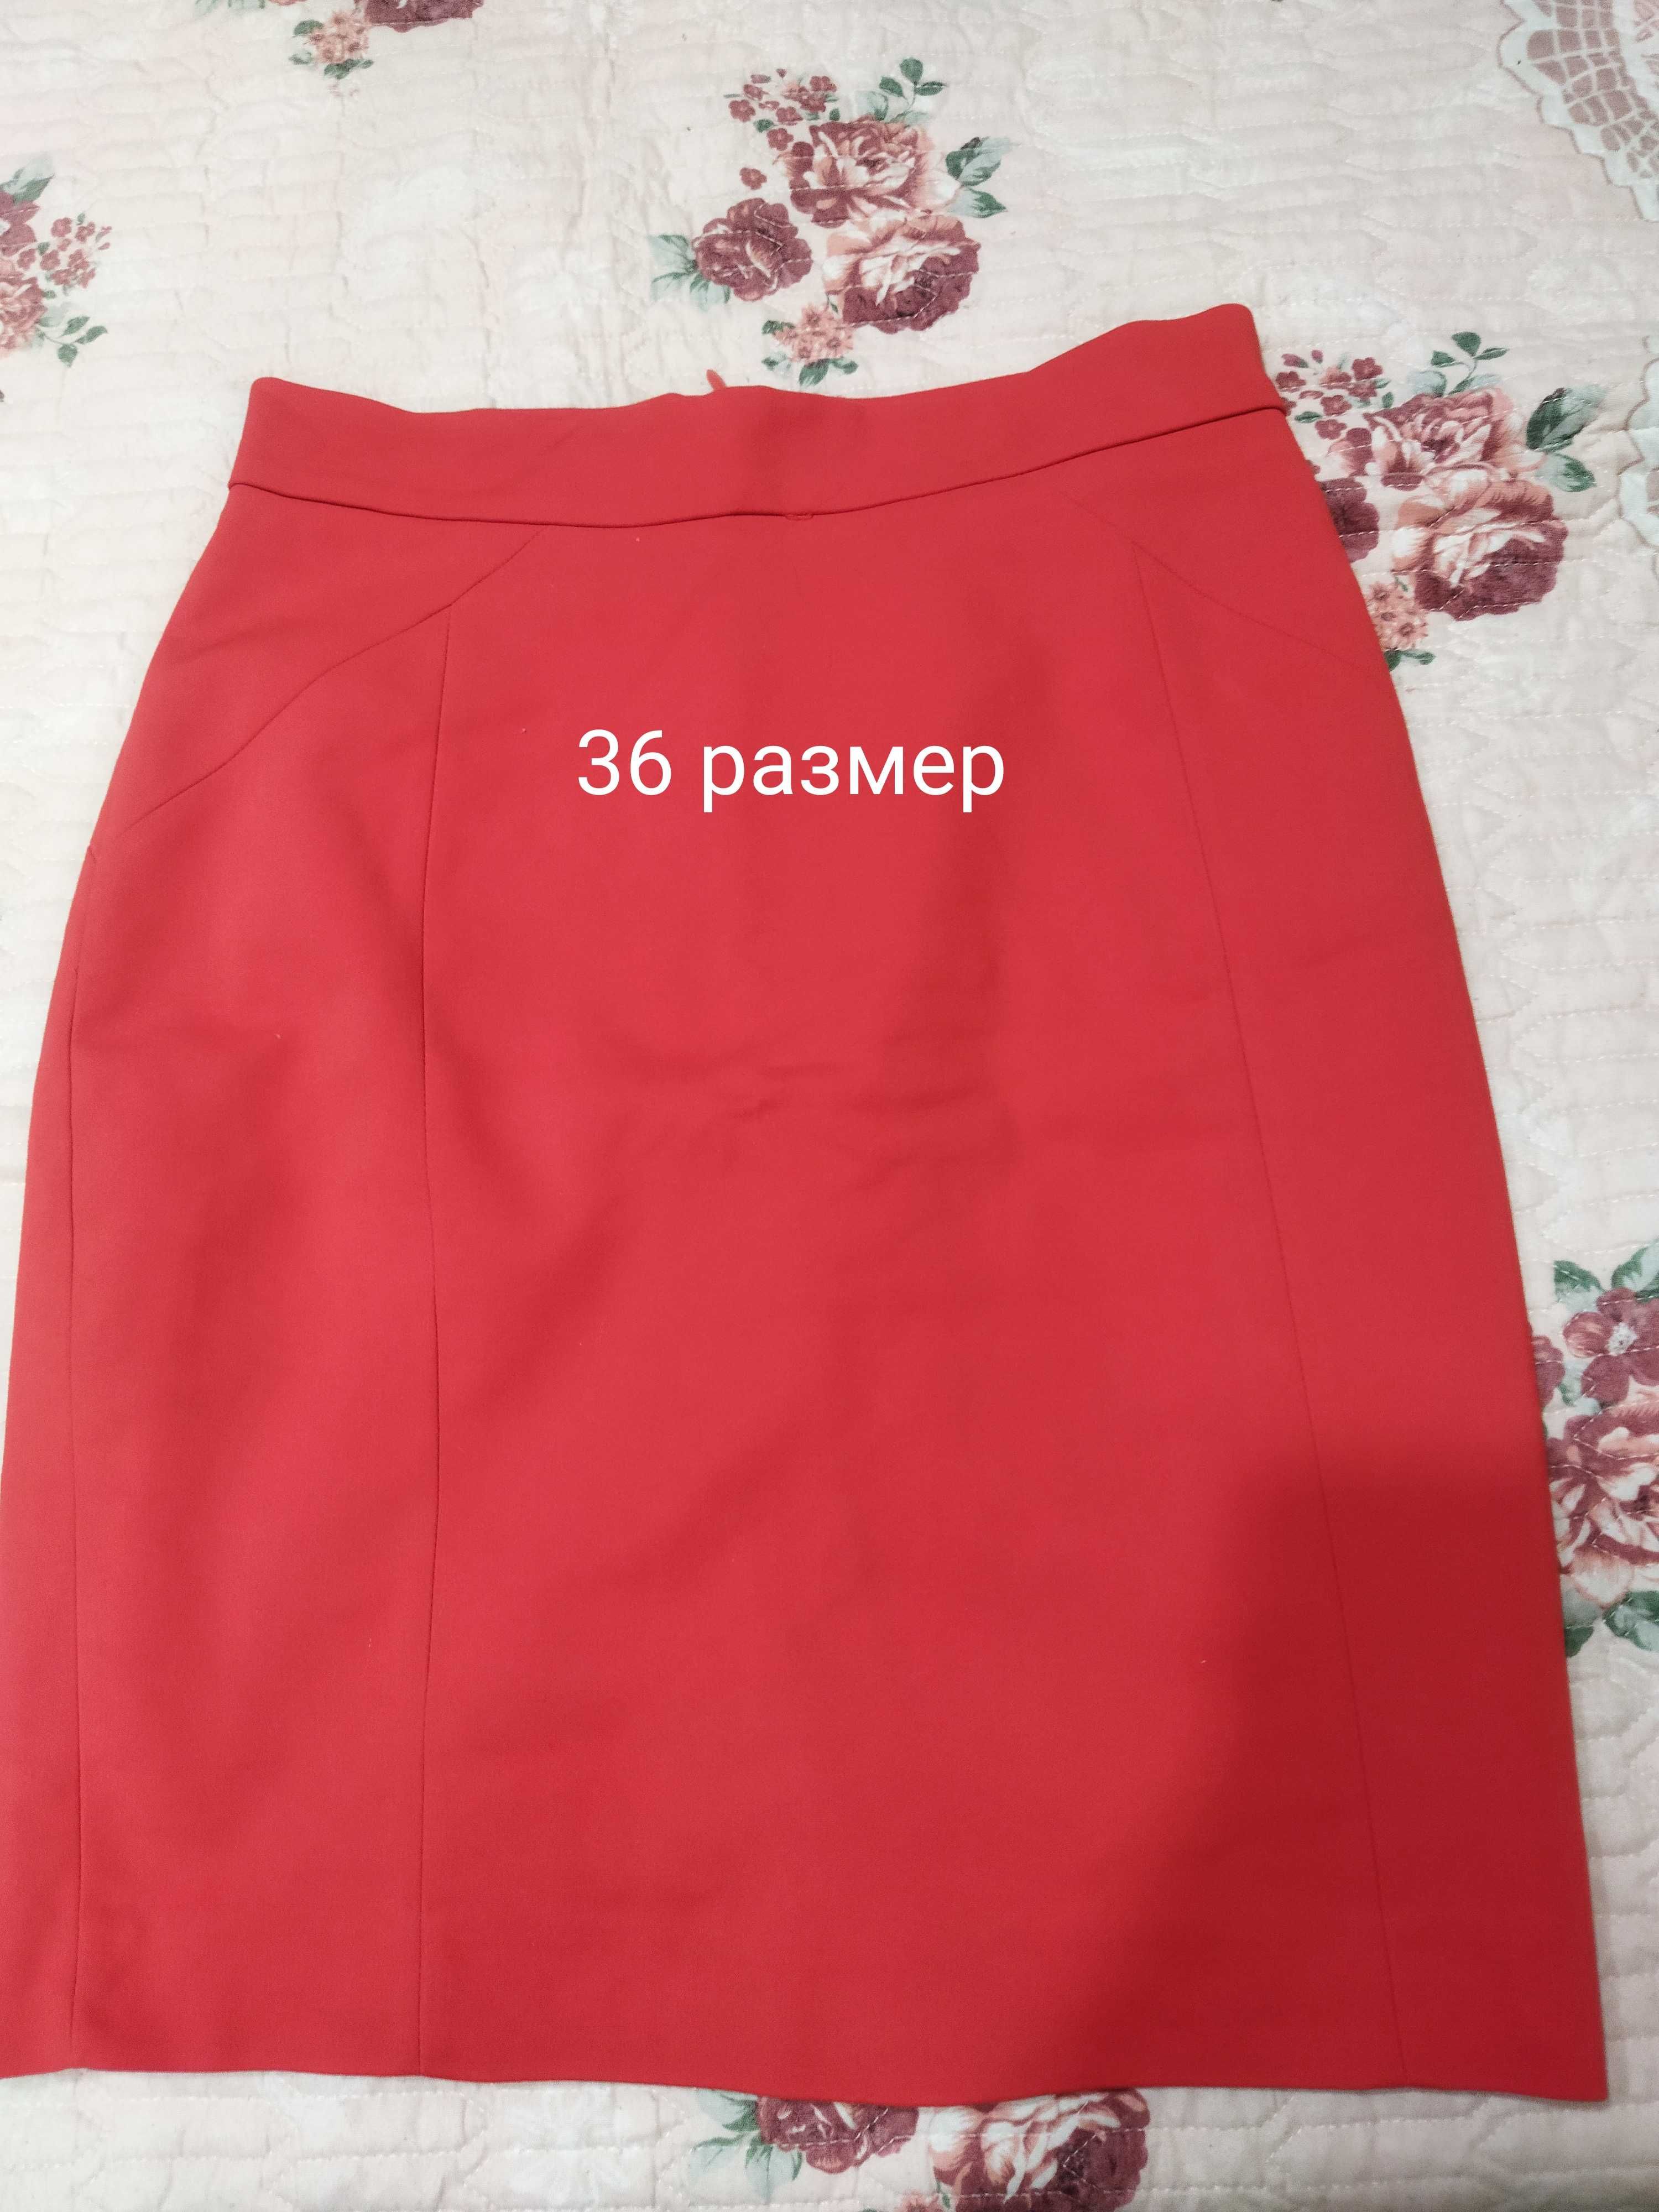 Фирменная юбка на девушку 36 размер